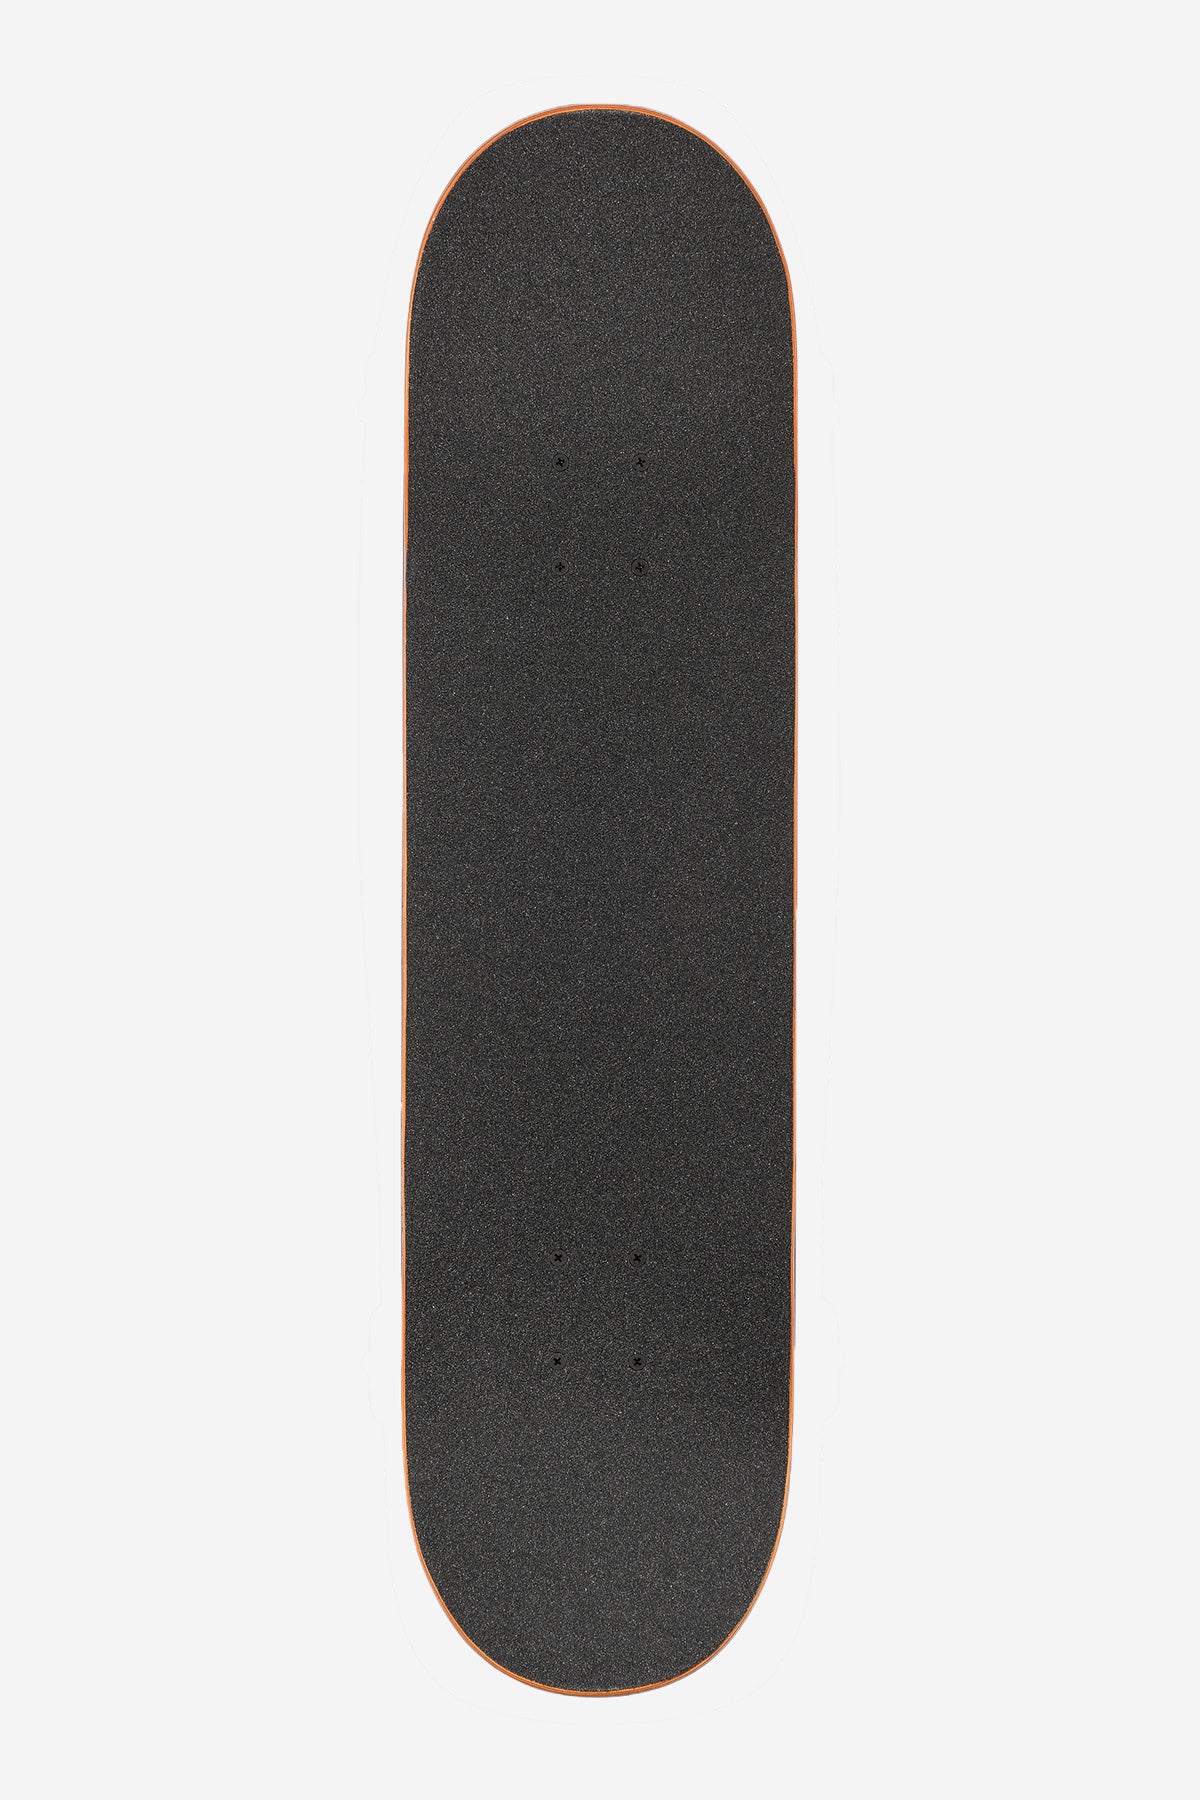 G1 Hard Luck - White/Noir - 8.0" complet Skateboard